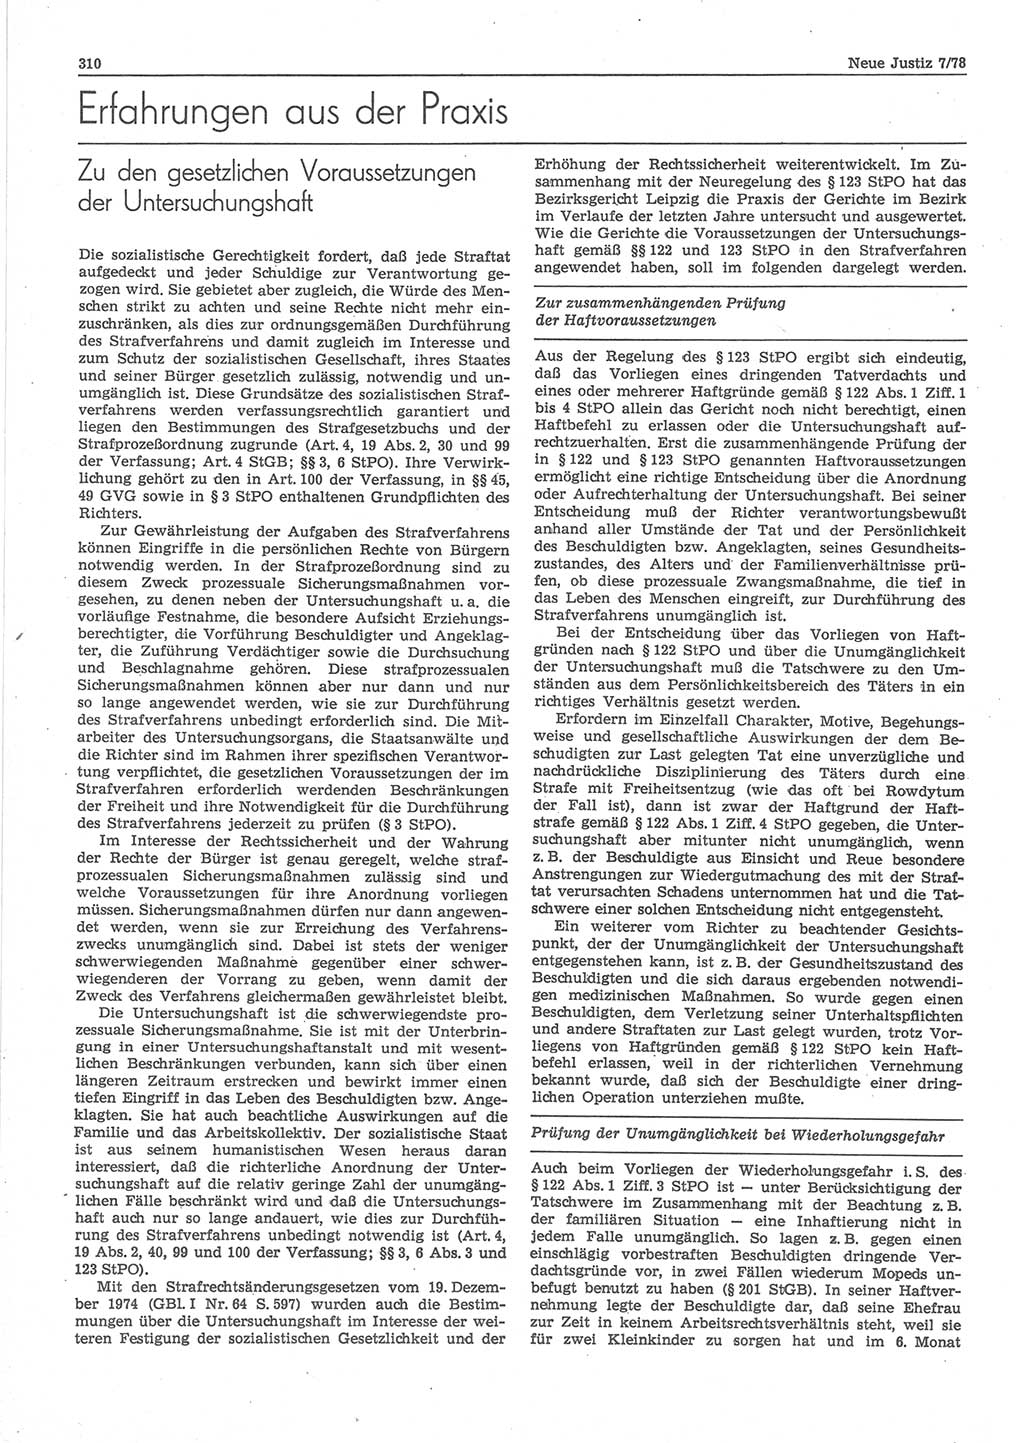 Neue Justiz (NJ), Zeitschrift für sozialistisches Recht und Gesetzlichkeit [Deutsche Demokratische Republik (DDR)], 32. Jahrgang 1978, Seite 310 (NJ DDR 1978, S. 310)